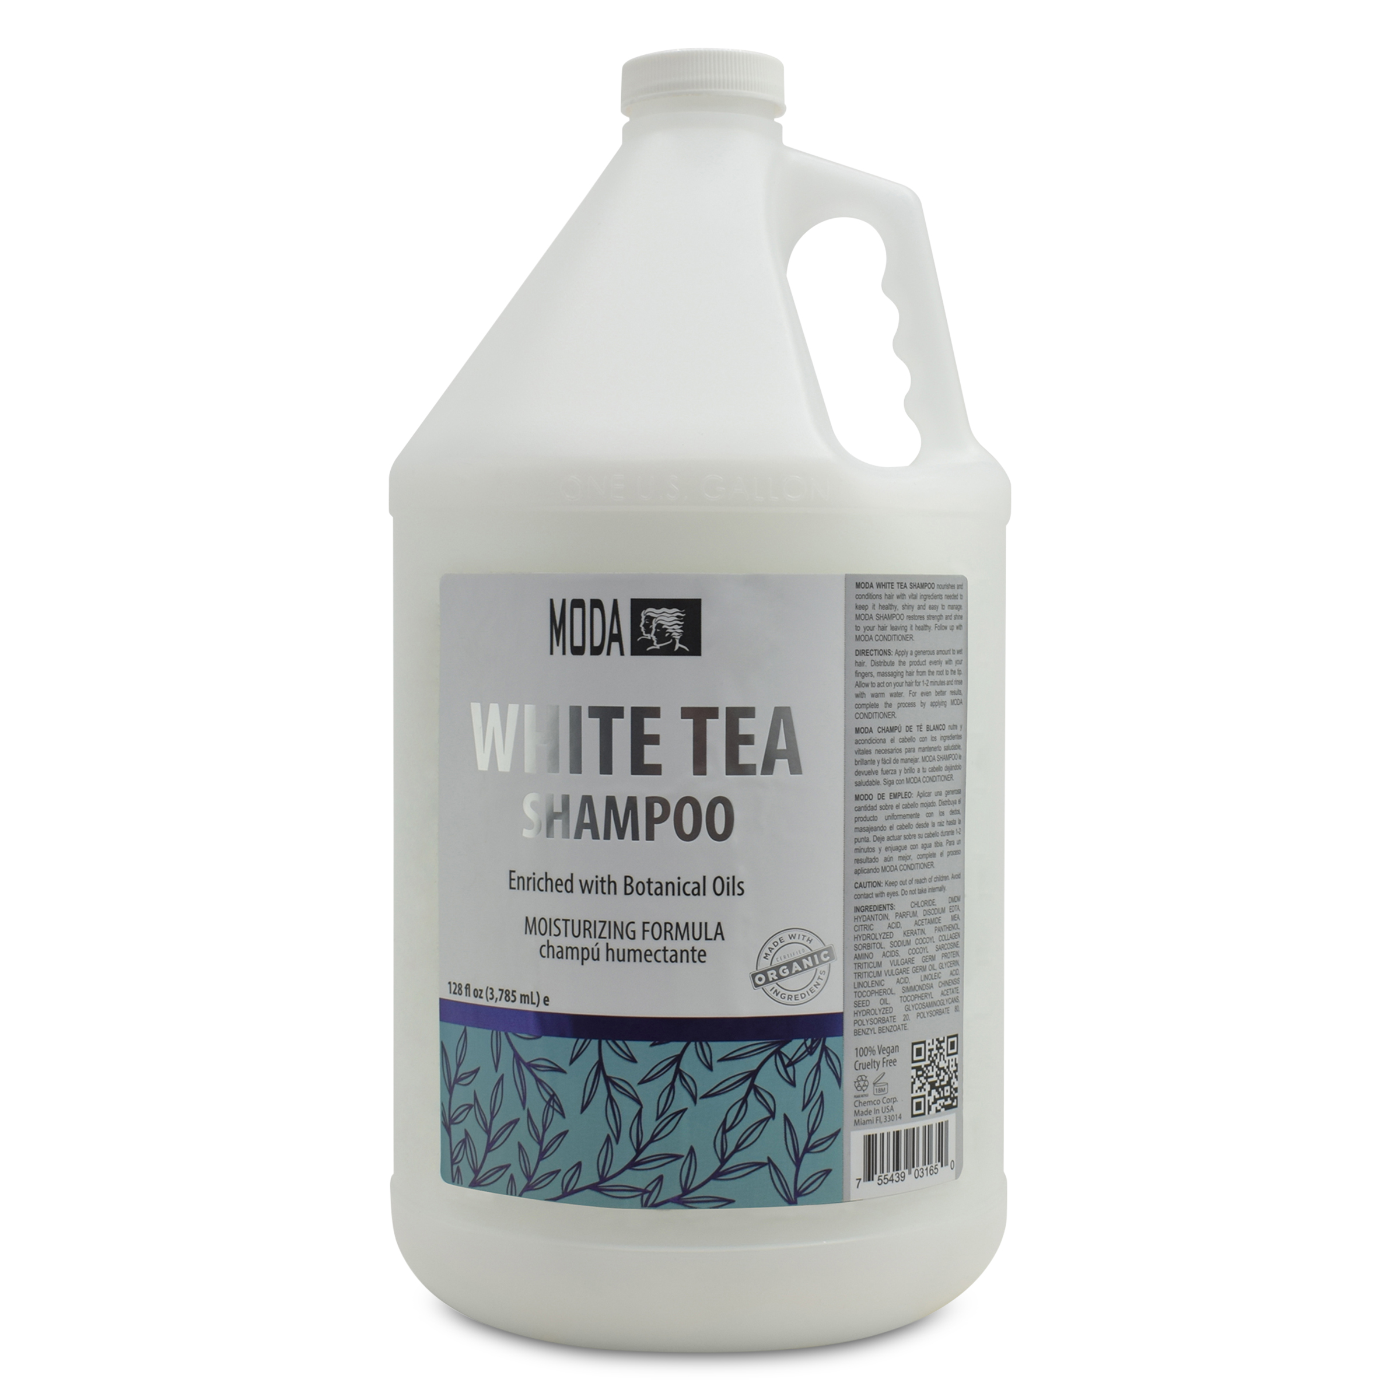 MODA White Tea Shampoo - 128 oz.